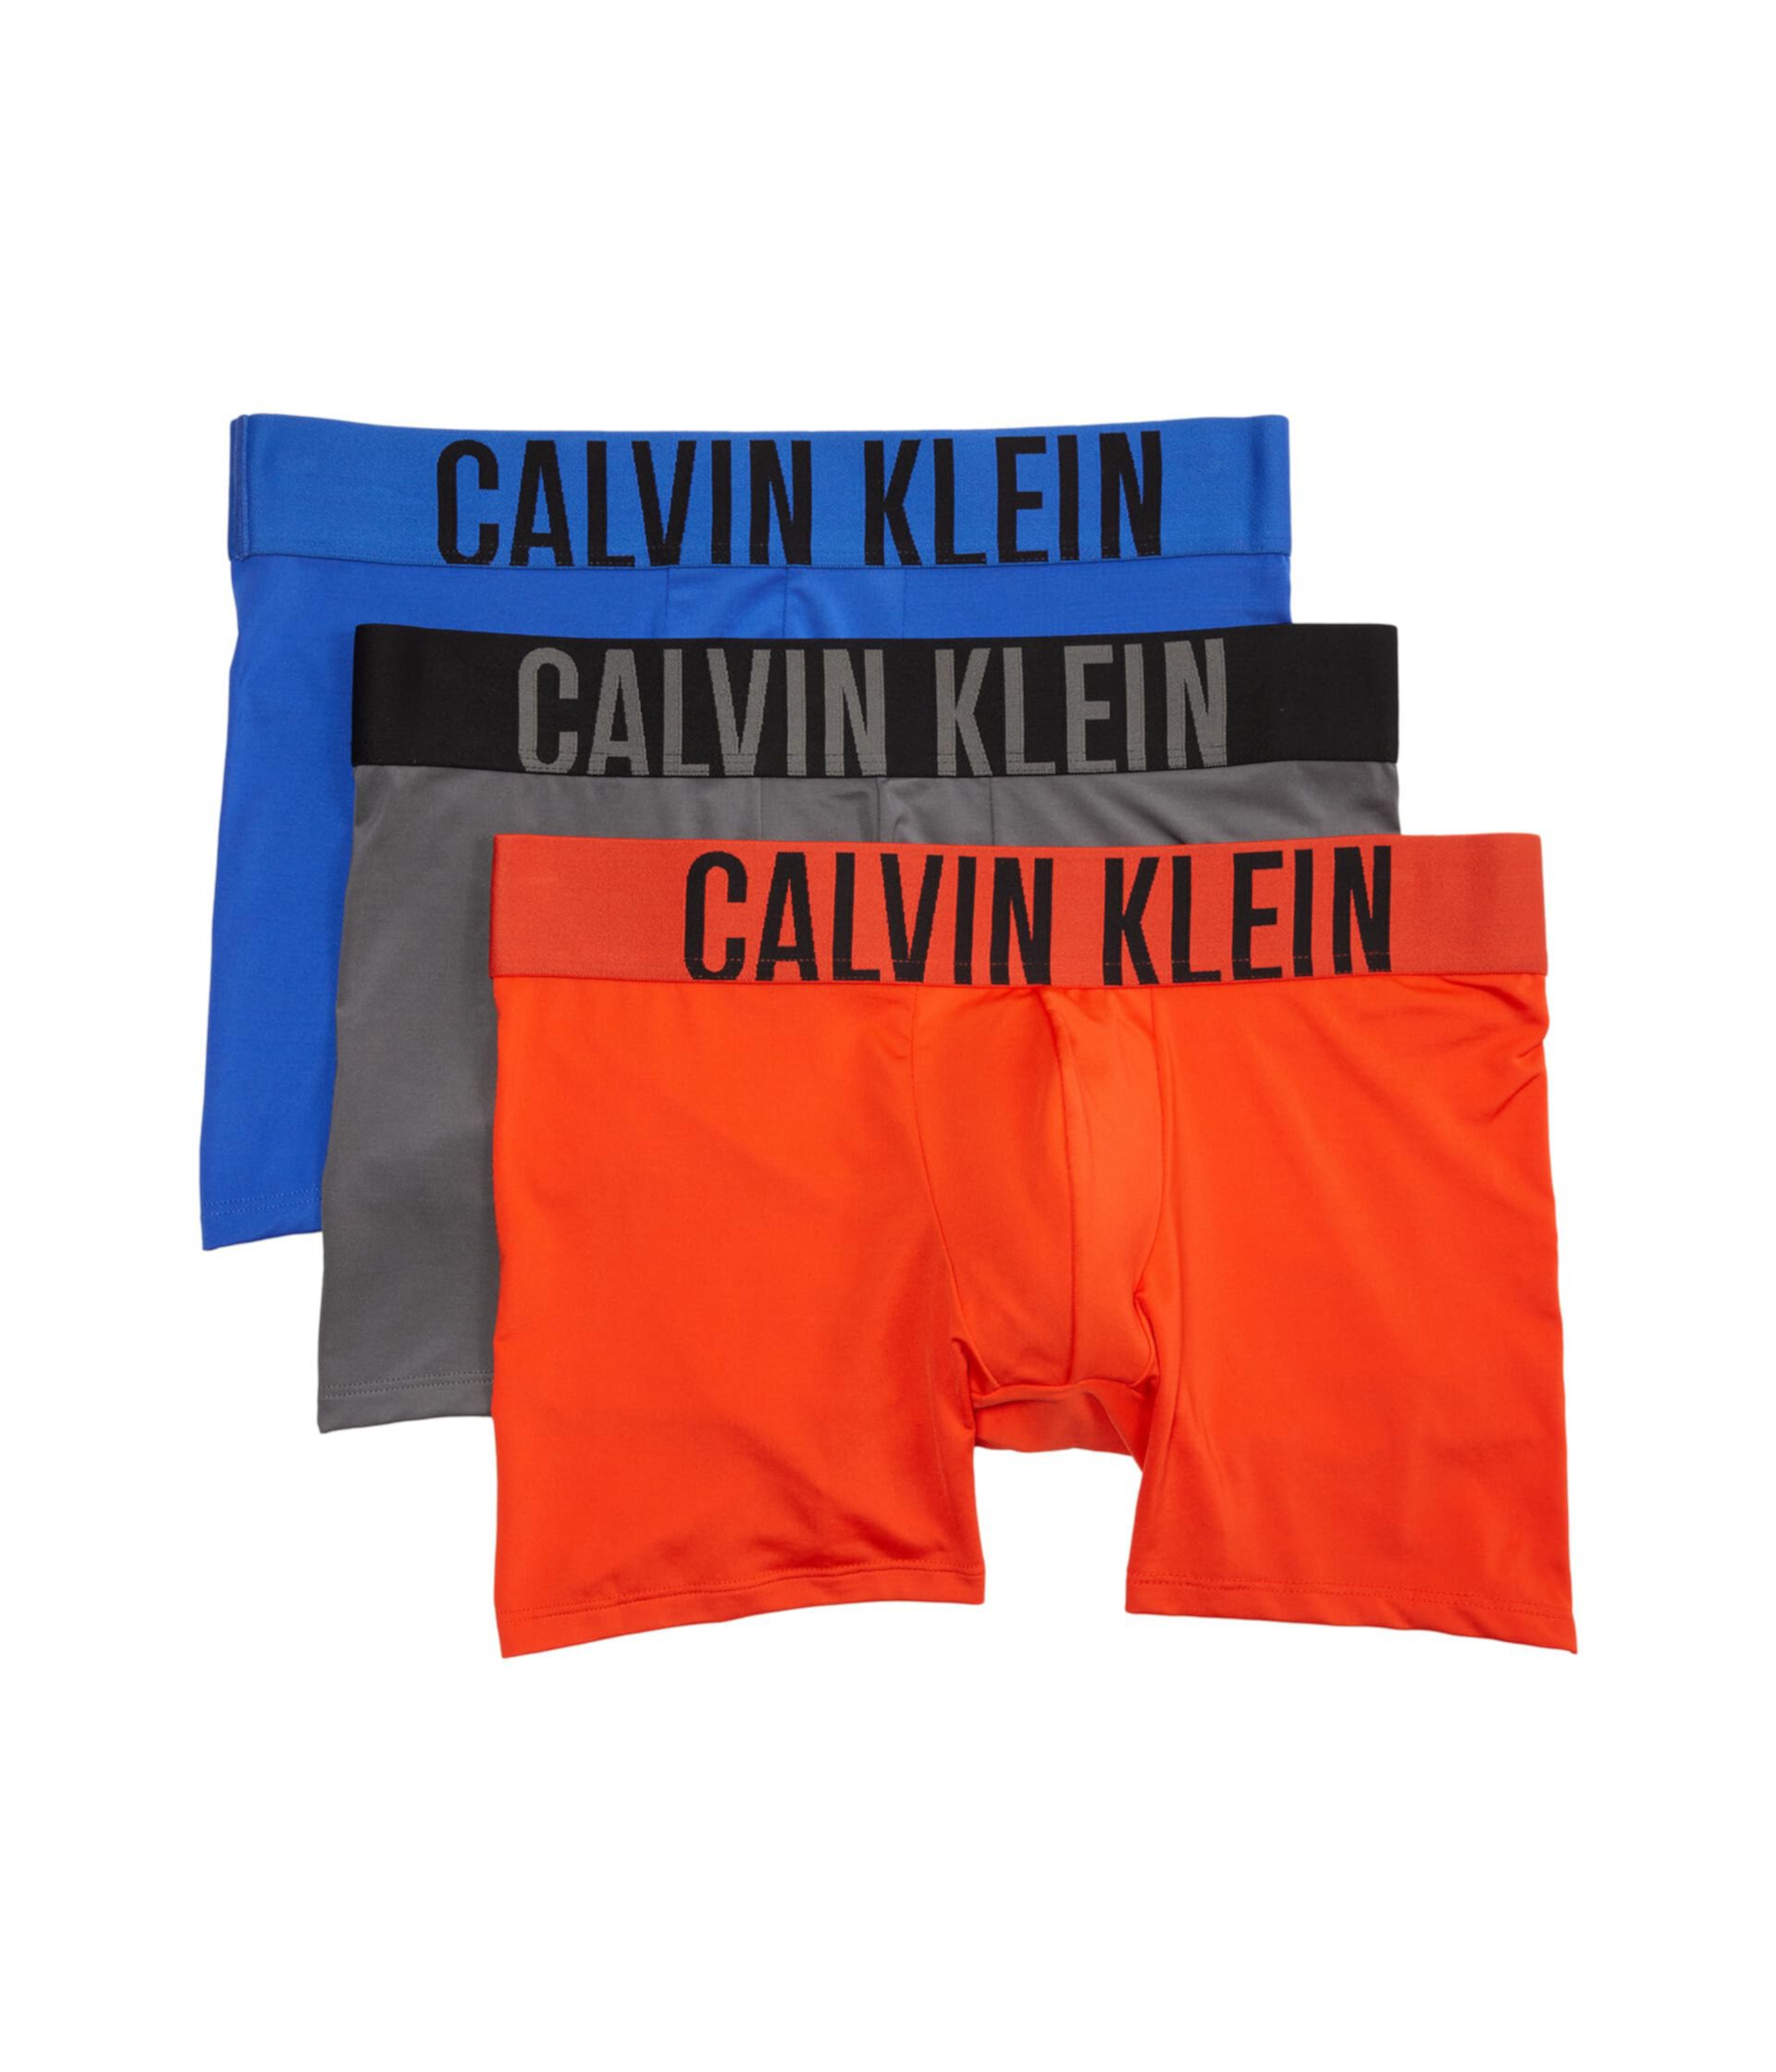 Мужские Боксеры Calvin Klein Intense Power 3-Pack Calvin Klein